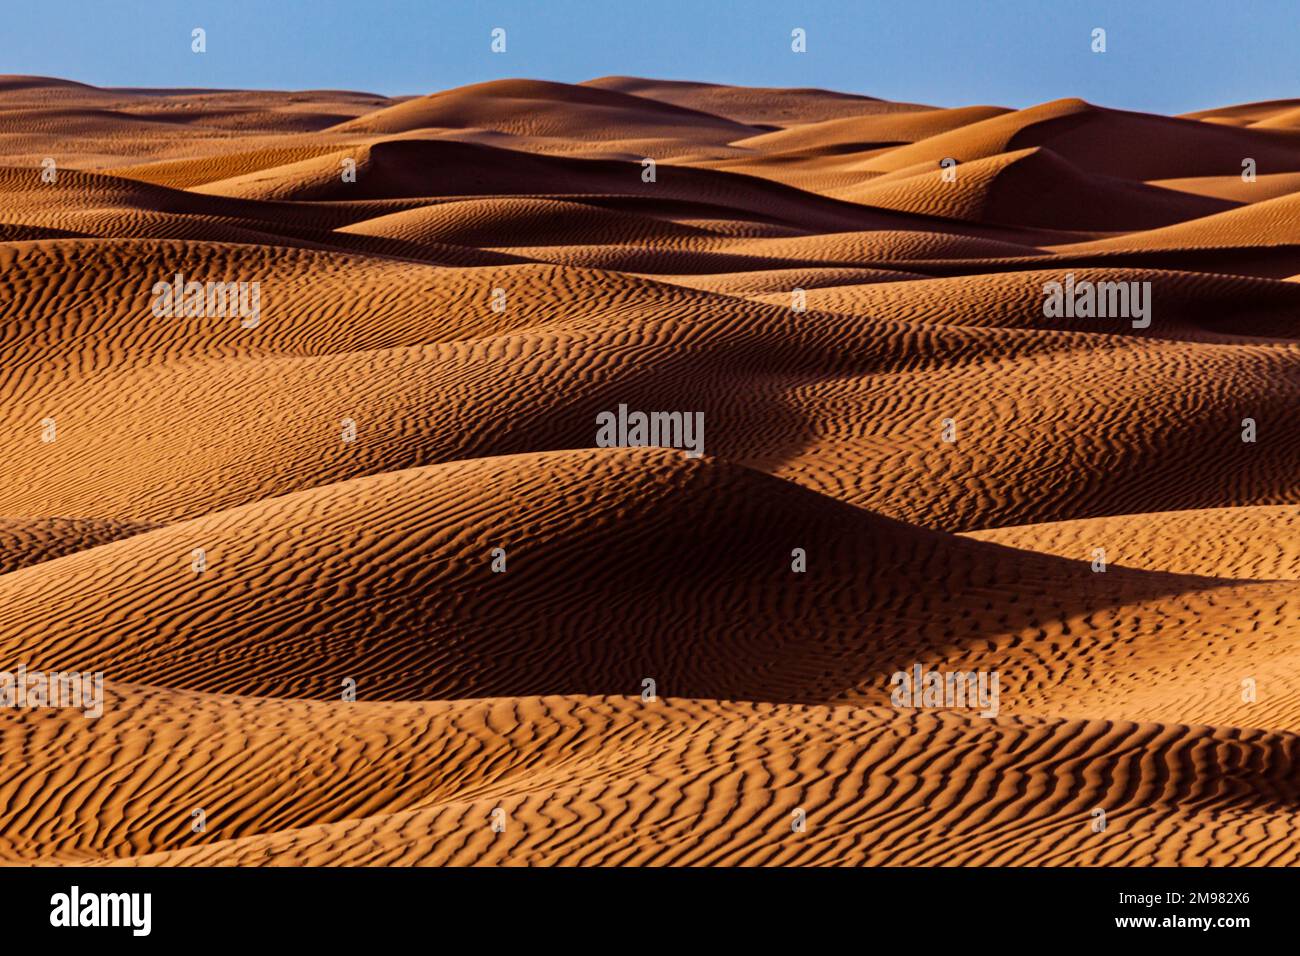 Paesaggio desertico con dune di sabbia, Arabia Saudita Foto Stock